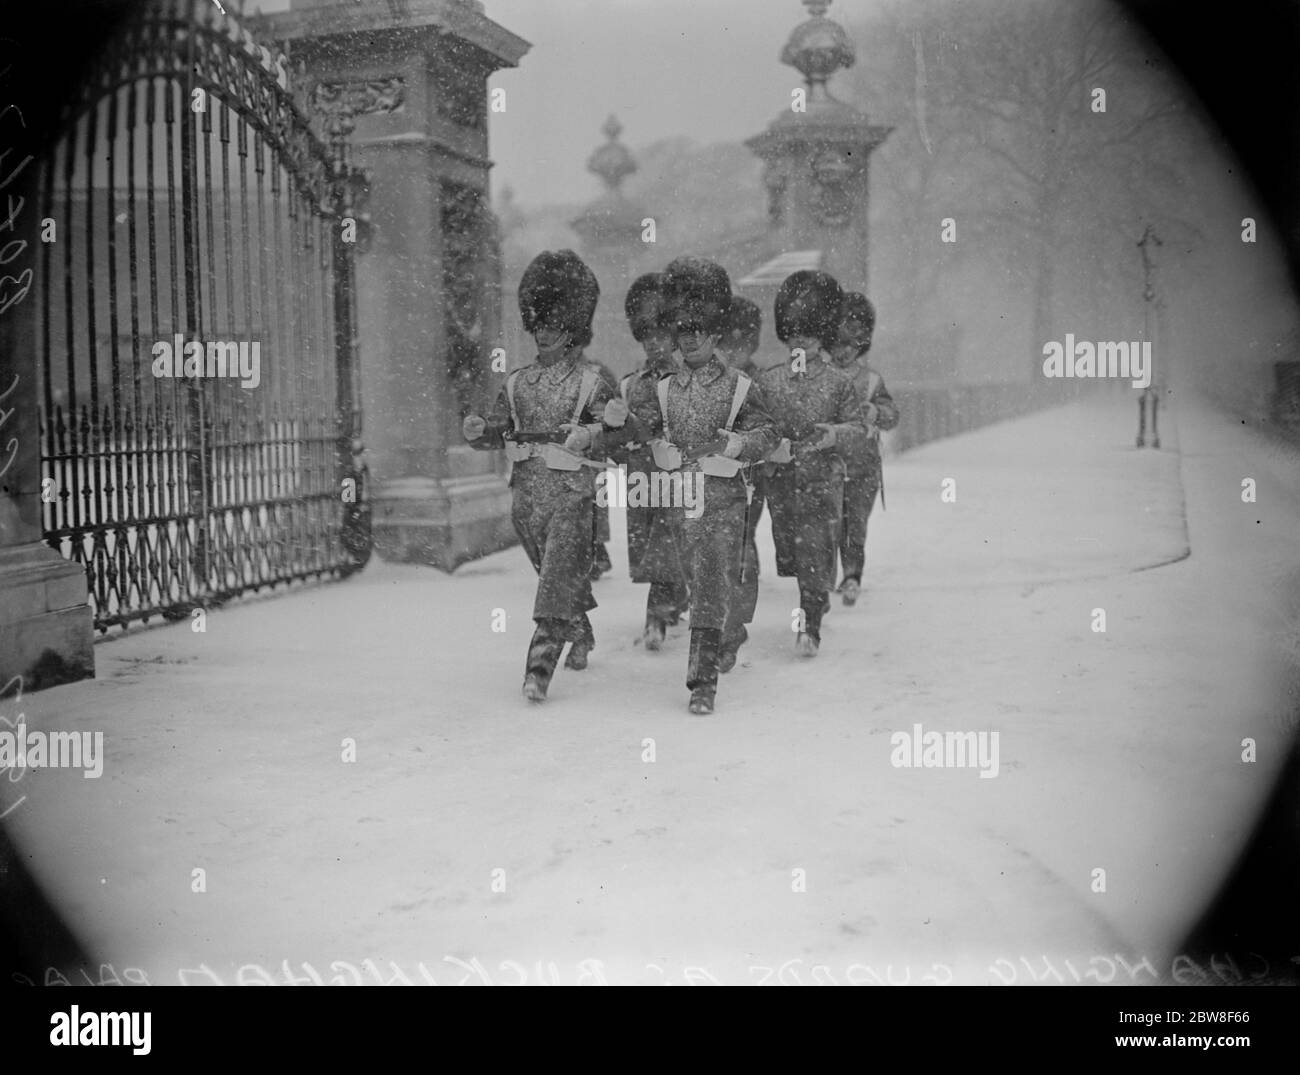 Temps réel de la région viticole à Londres . Une scène à l'extérieur de Buckingham Palace pendant le changement des gardes montrant des gardes marchant dans la neige à fourrure . 10 février 1932 Banque D'Images